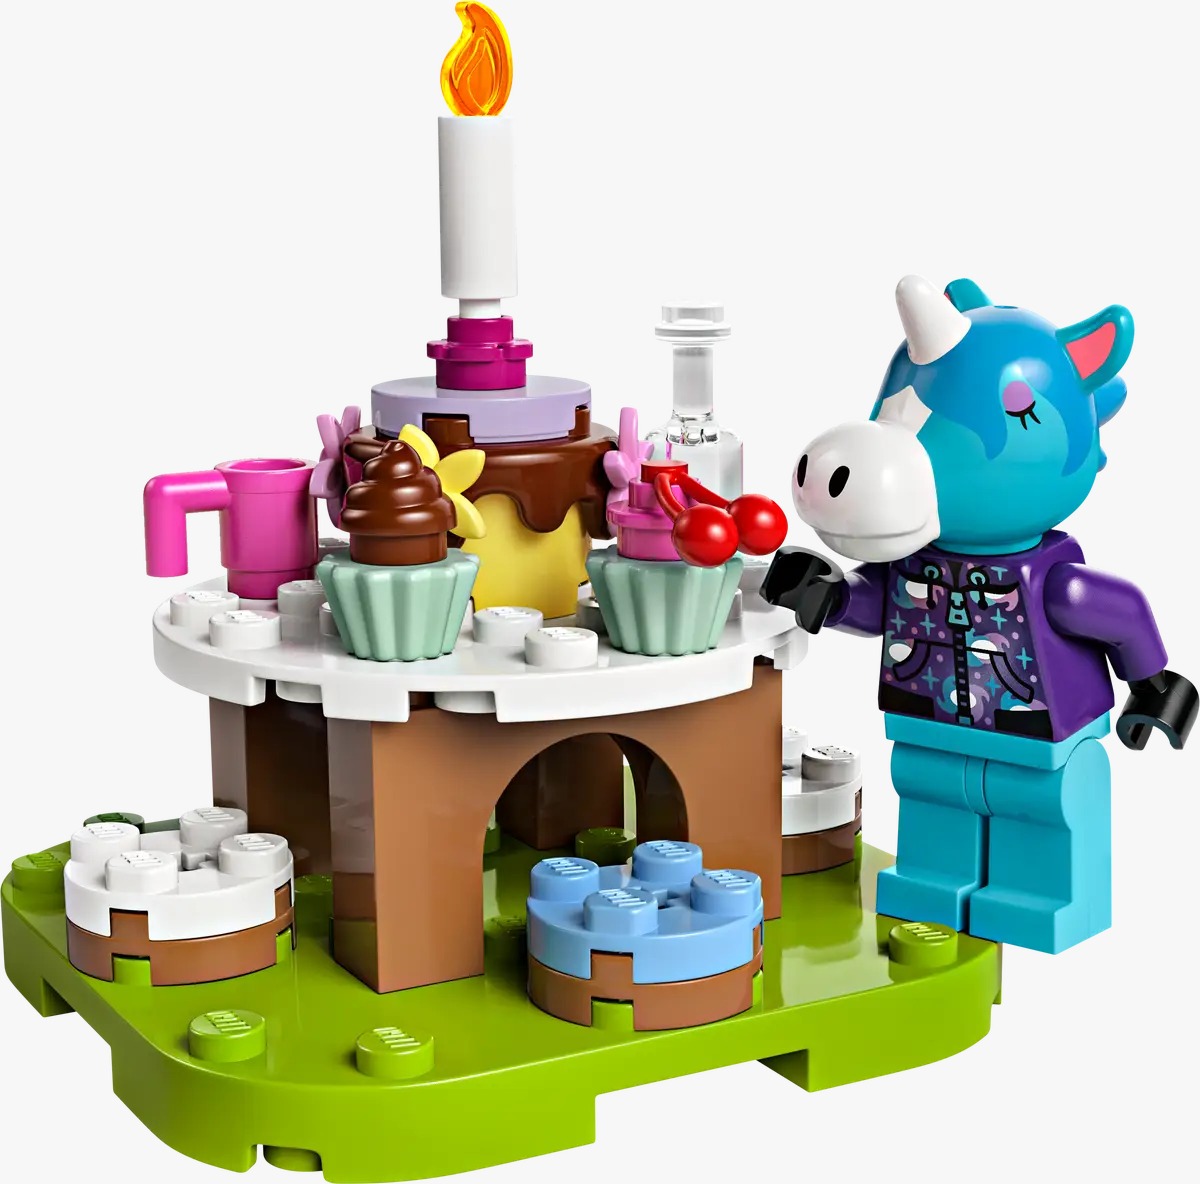 LEGO Animal Crossing: ¡Conoce los 5 nuevos sets! 13